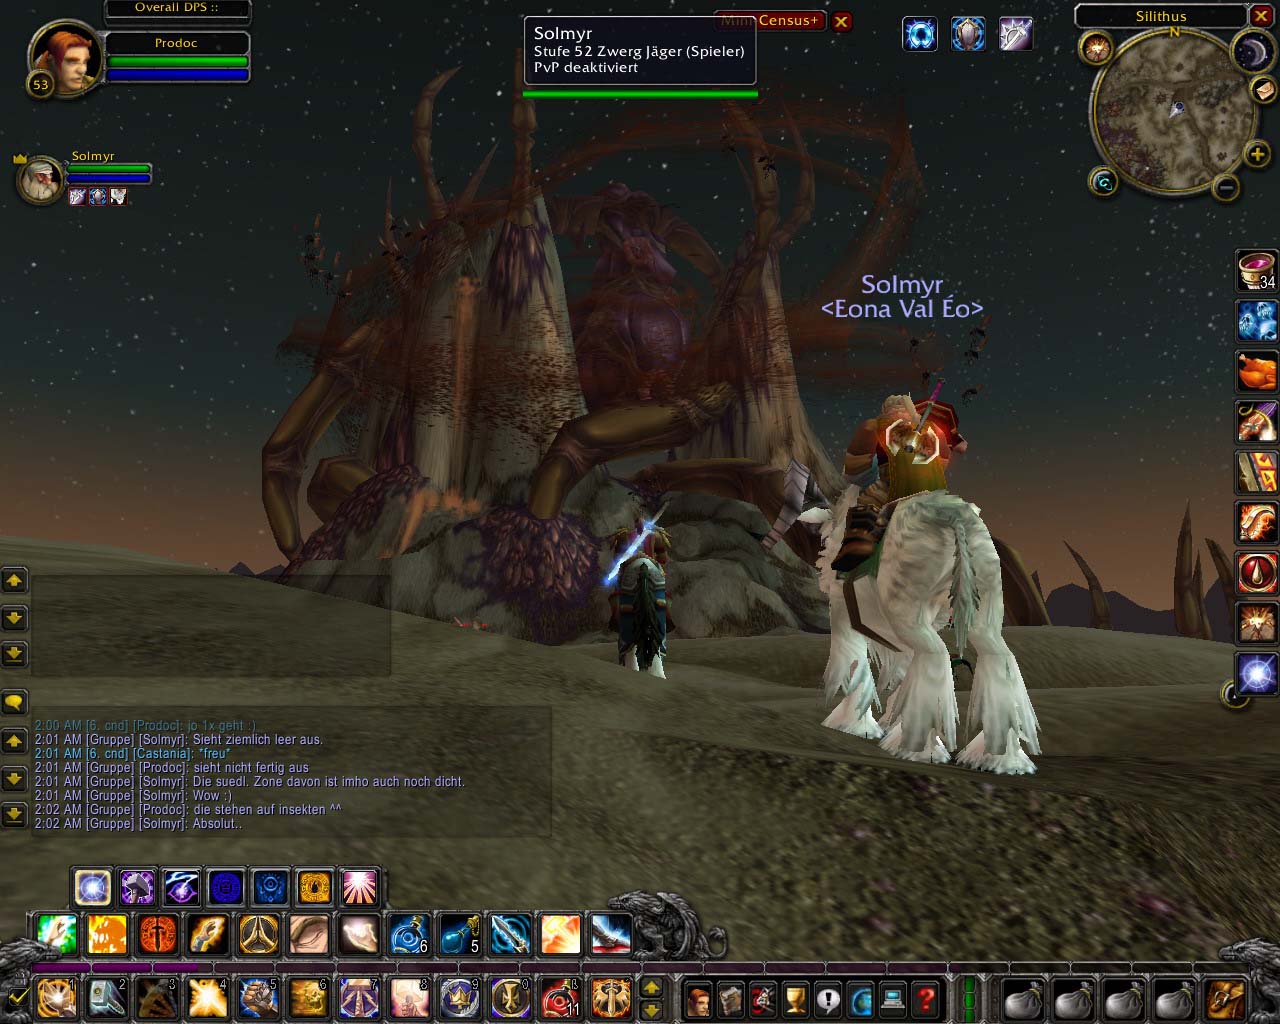 World of Warcraft - Zu zweit unterwegs in einsamen Gegenden